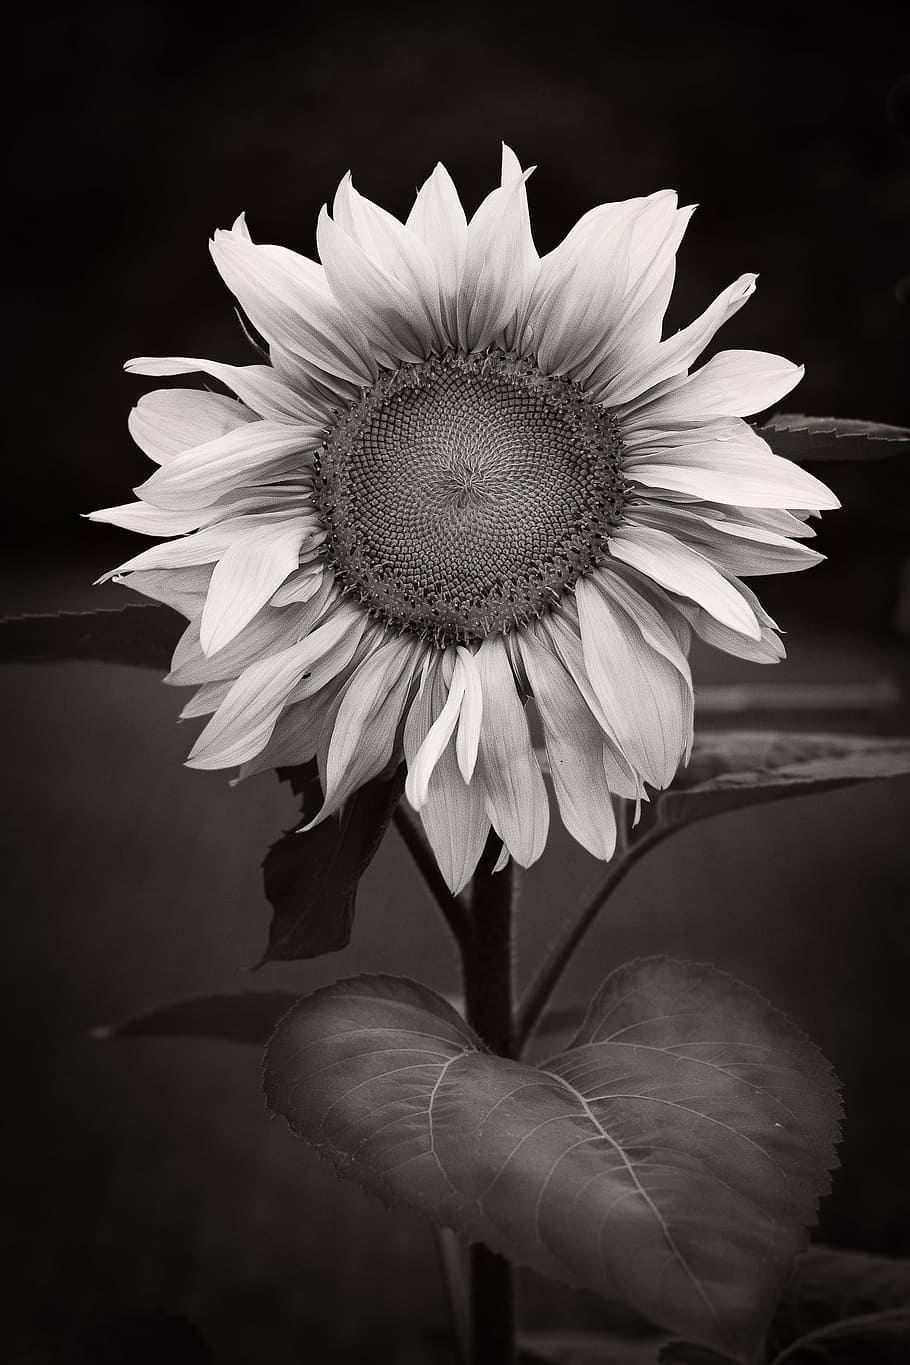 bunga matahari, abstrak, hitam putih, bunga, daun bunga, kerapuhan, kepala bunga, keindahan di alam, pertumbuhan, alam